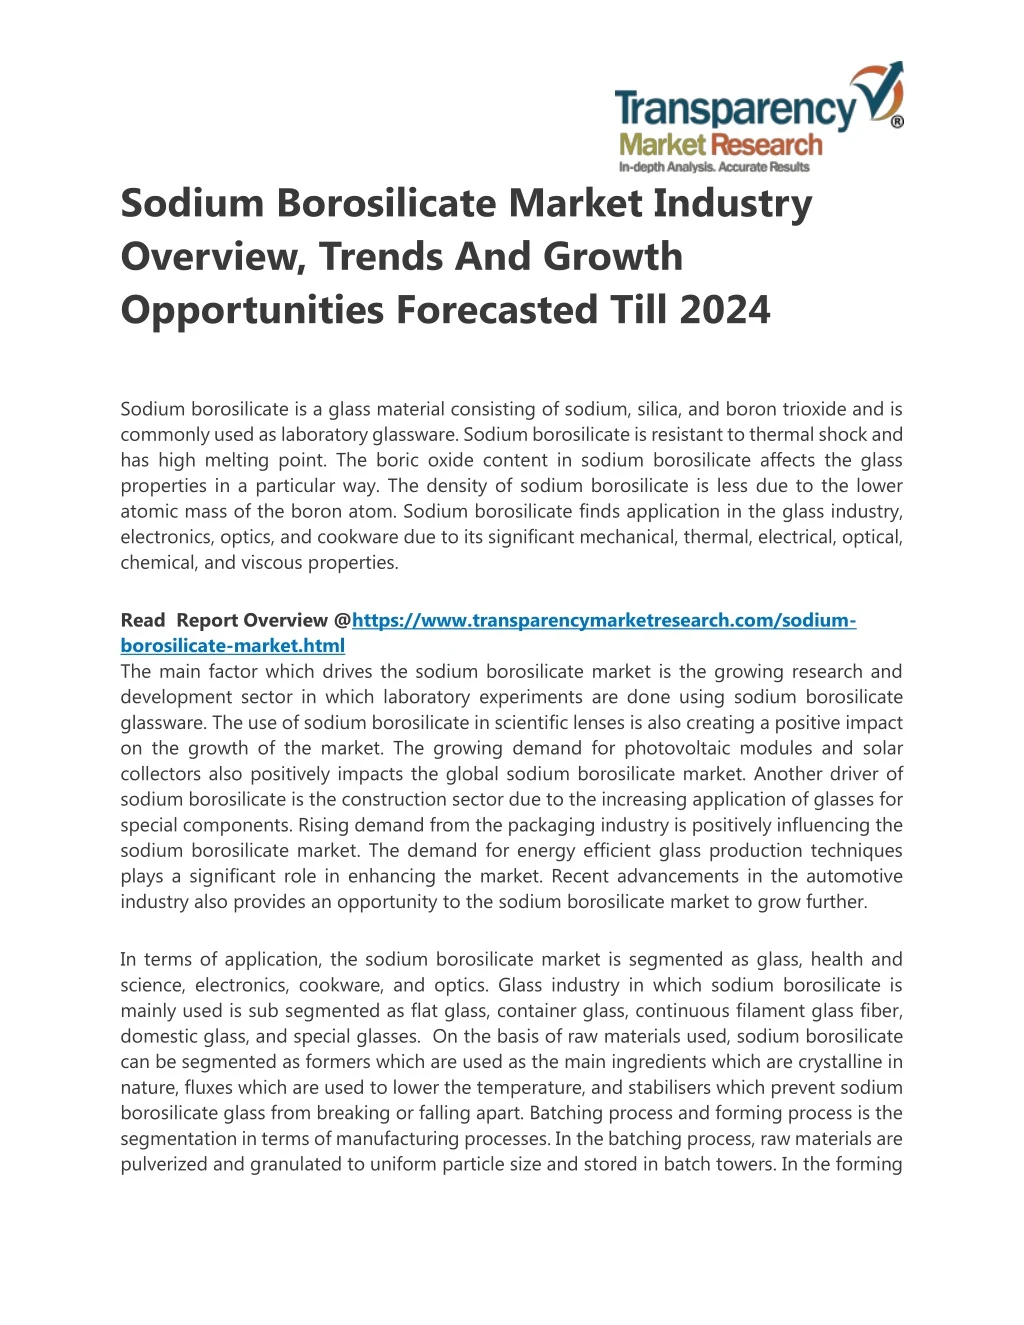 sodium borosilicate market industry overview